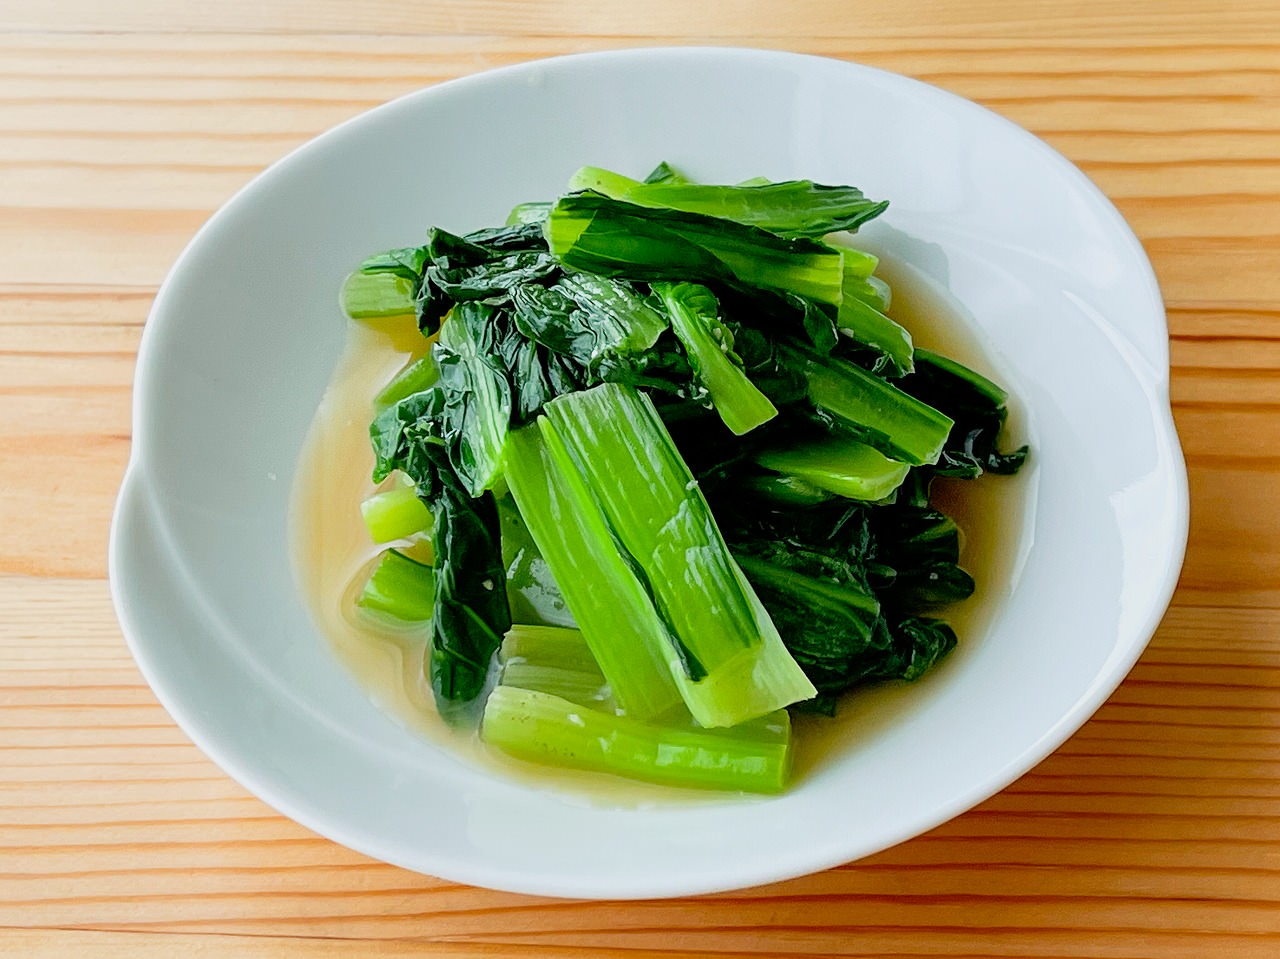 【野菜ひとつ】小松菜のわさび風味おひたし